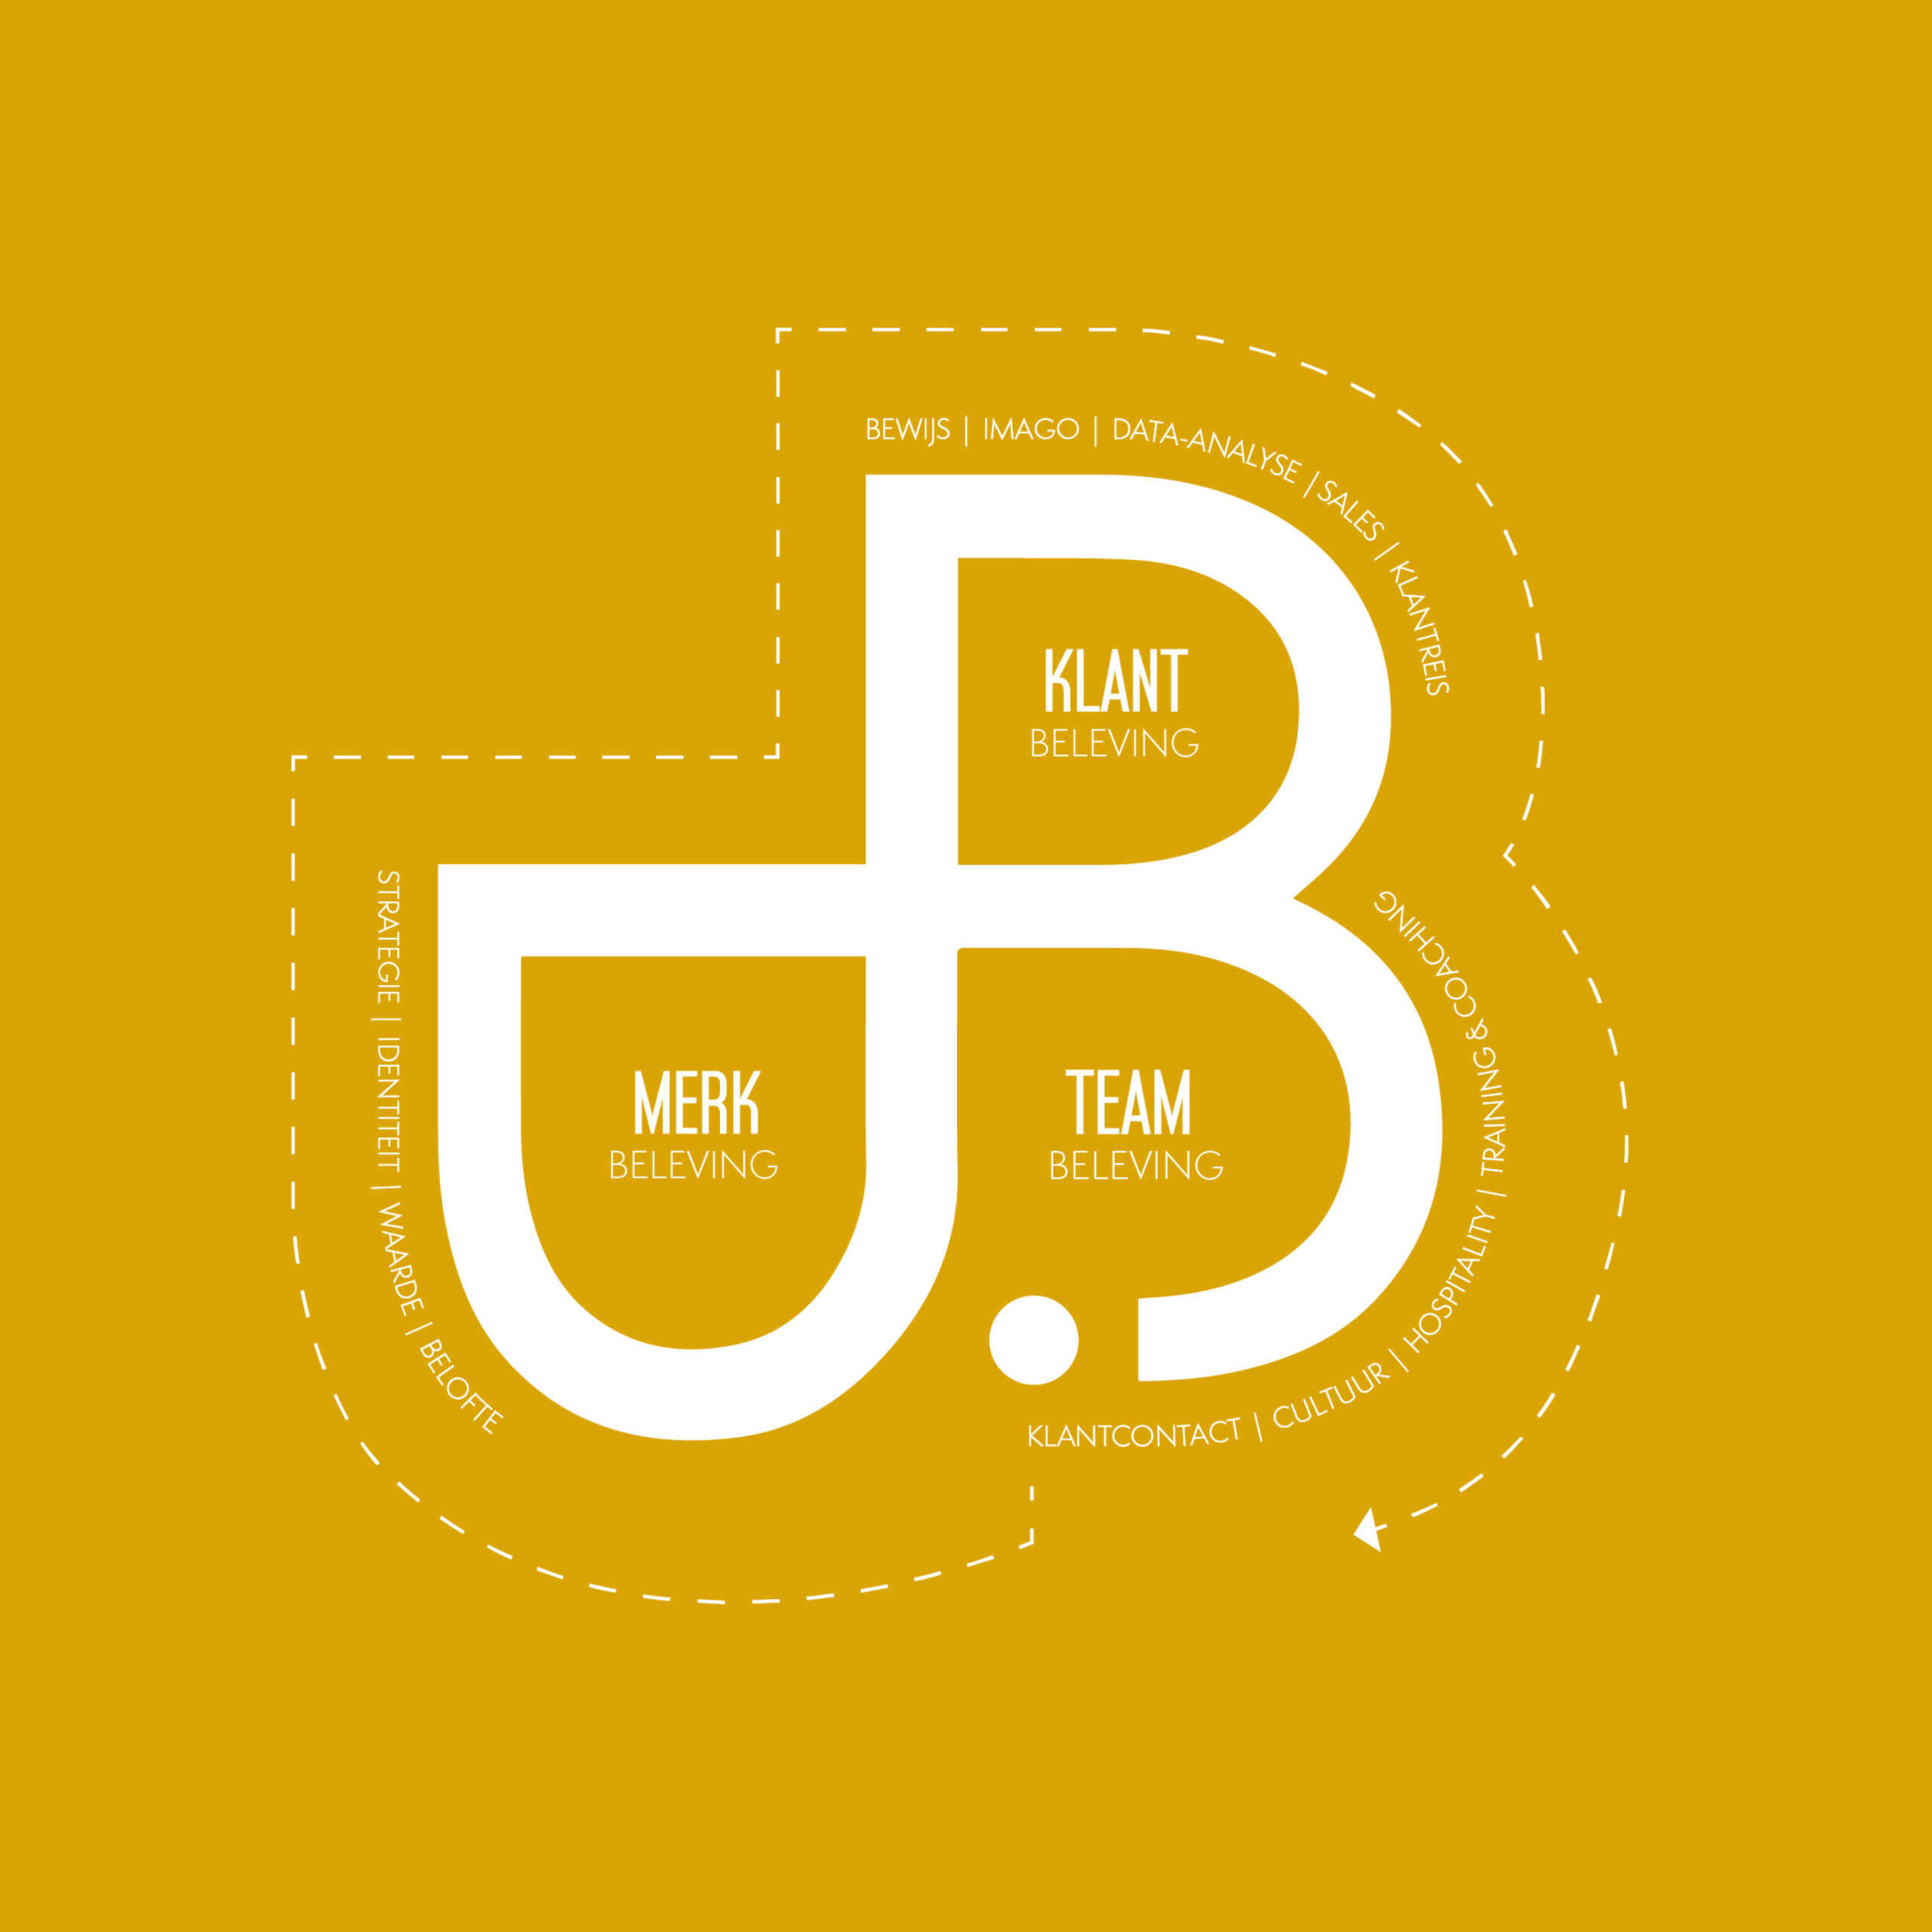 3B model B-Partners: merkbeleving, teambeleving, klantbeleving